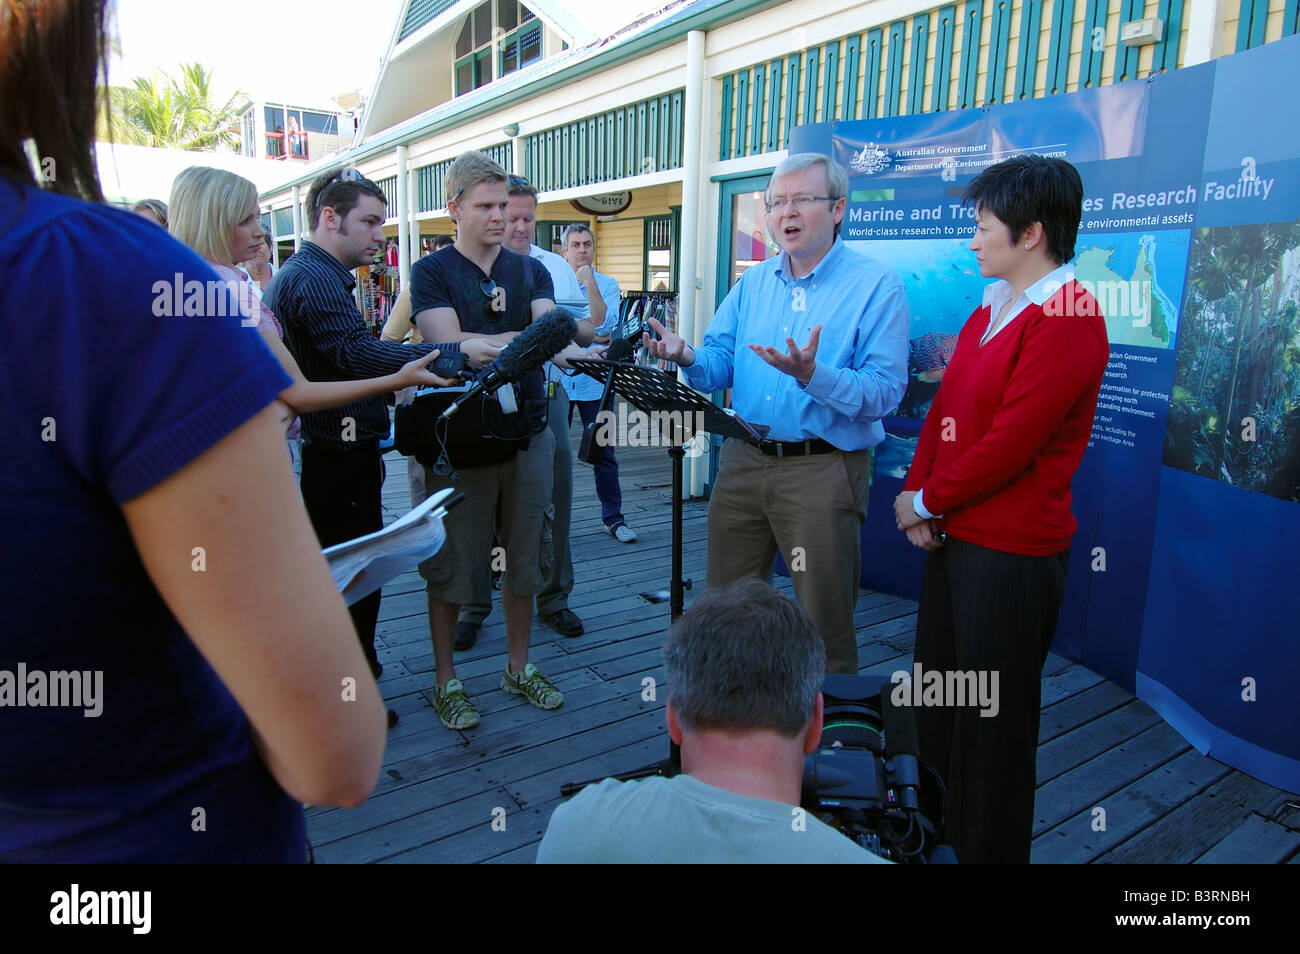 Le Premier ministre australien Kevin Rudd et le changement climatique Ministre Penny Wong at outdoor media conference Banque D'Images